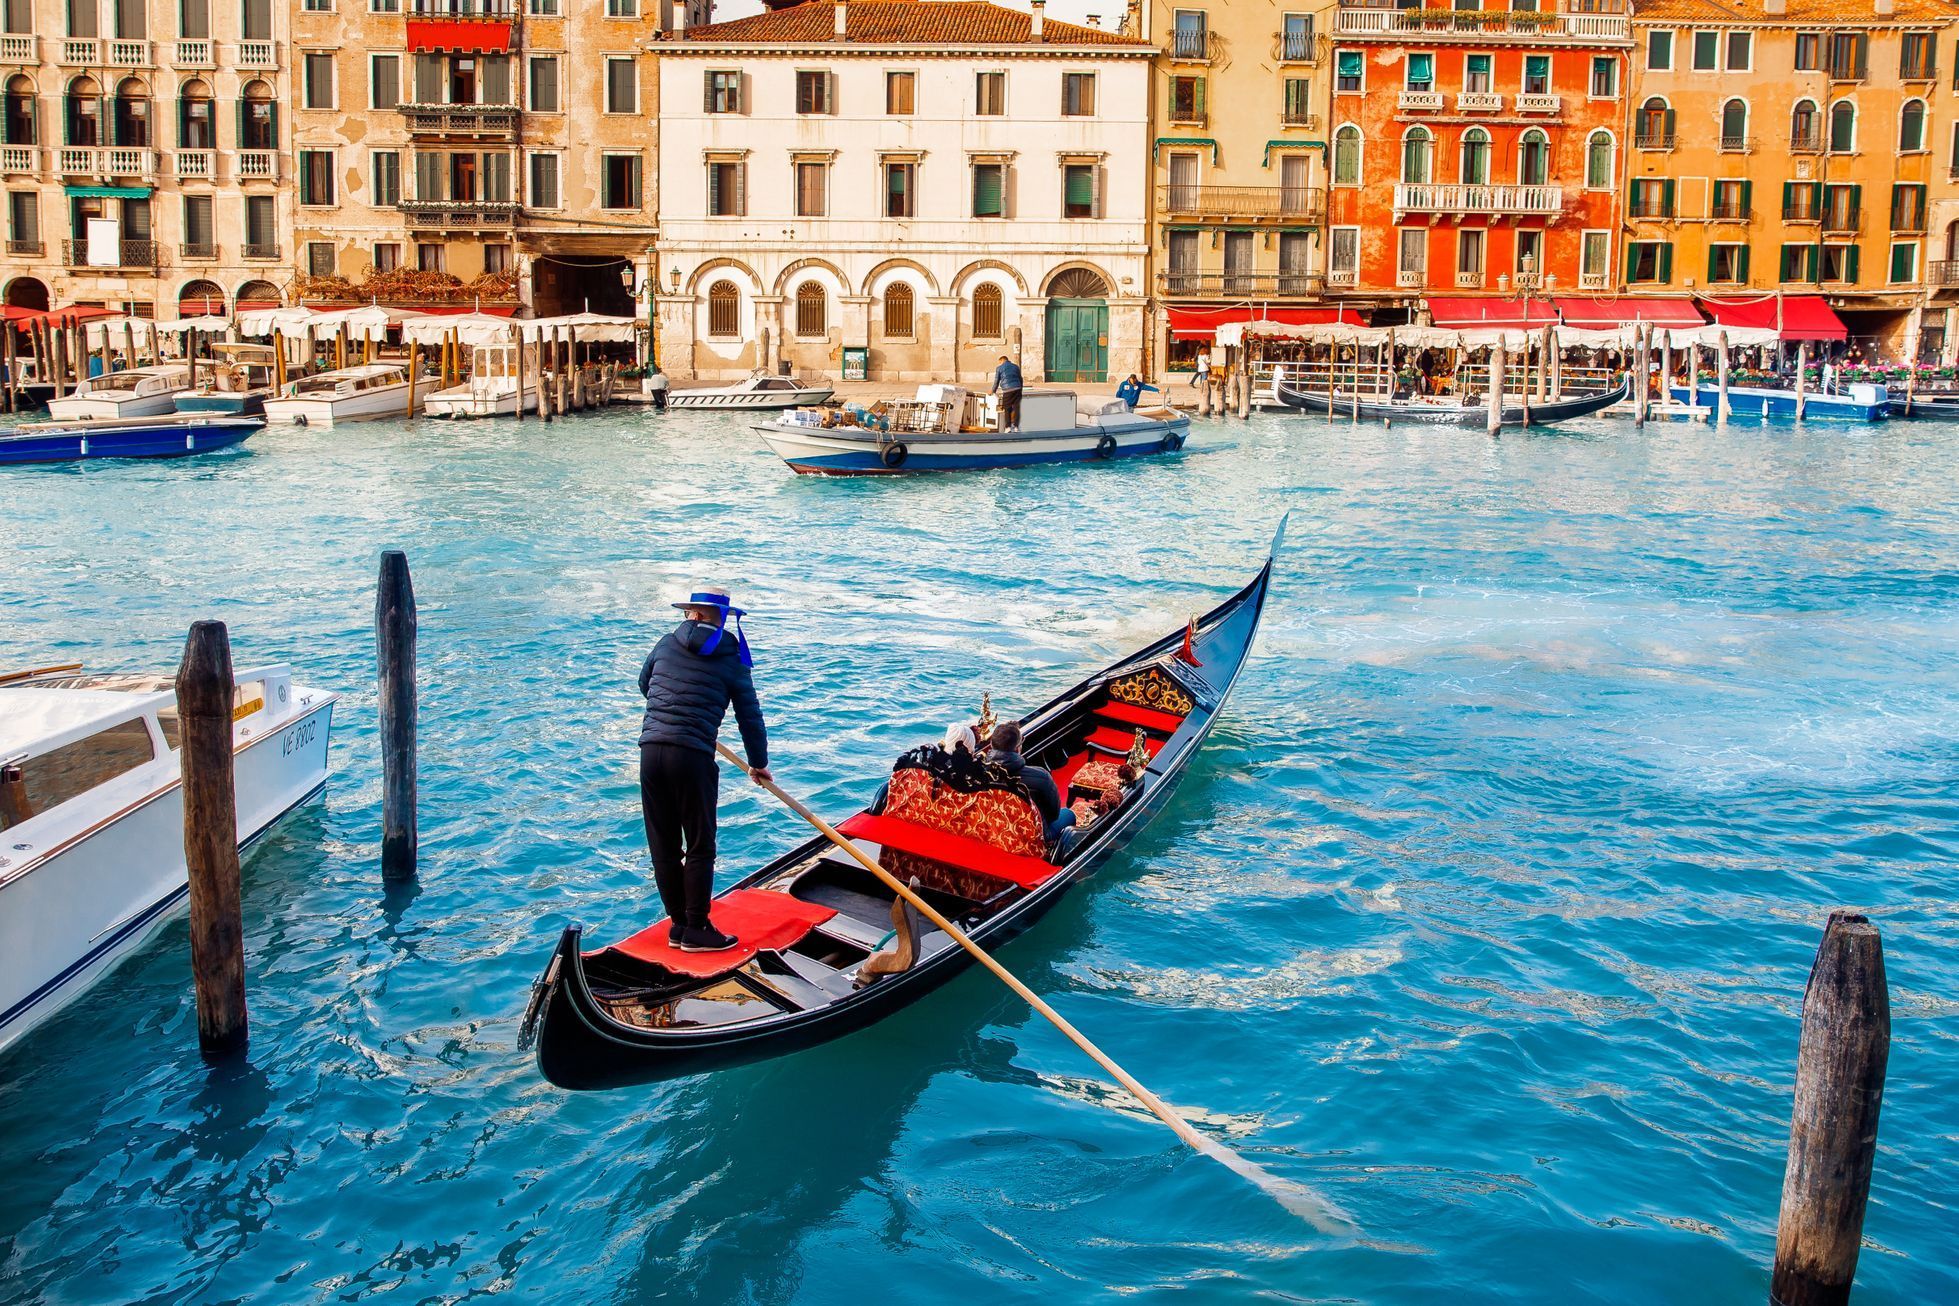 Benátky, gondola, gondoliér, ilustrační foto